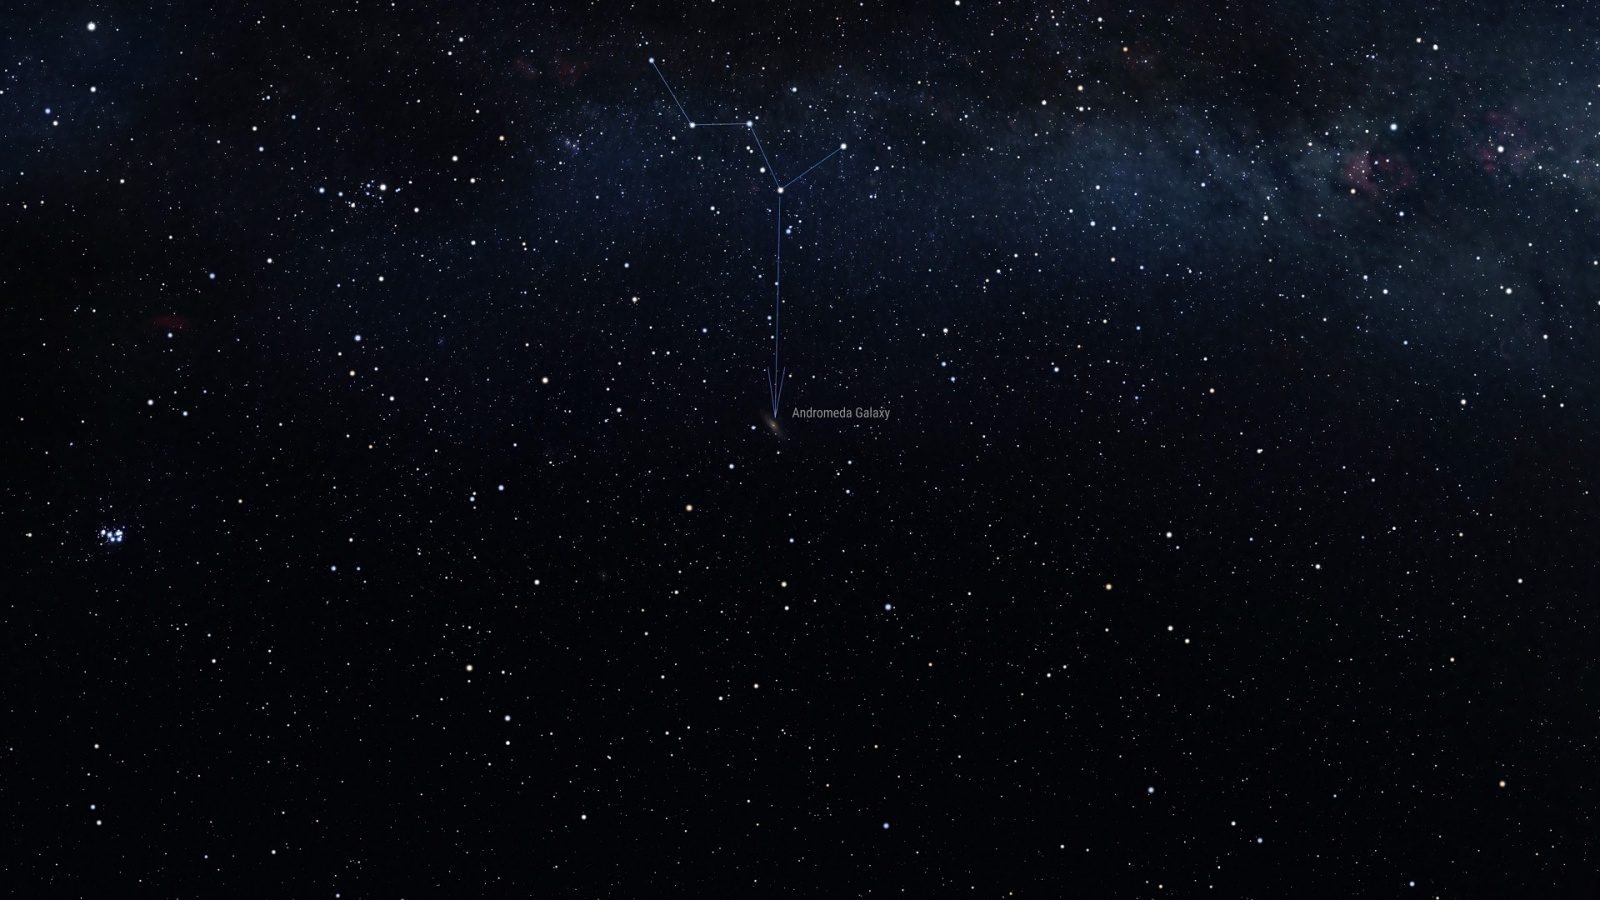 Способ отыскать на небе галактику Андромеды, отталкиваясь от созвездия Кассиопеи  